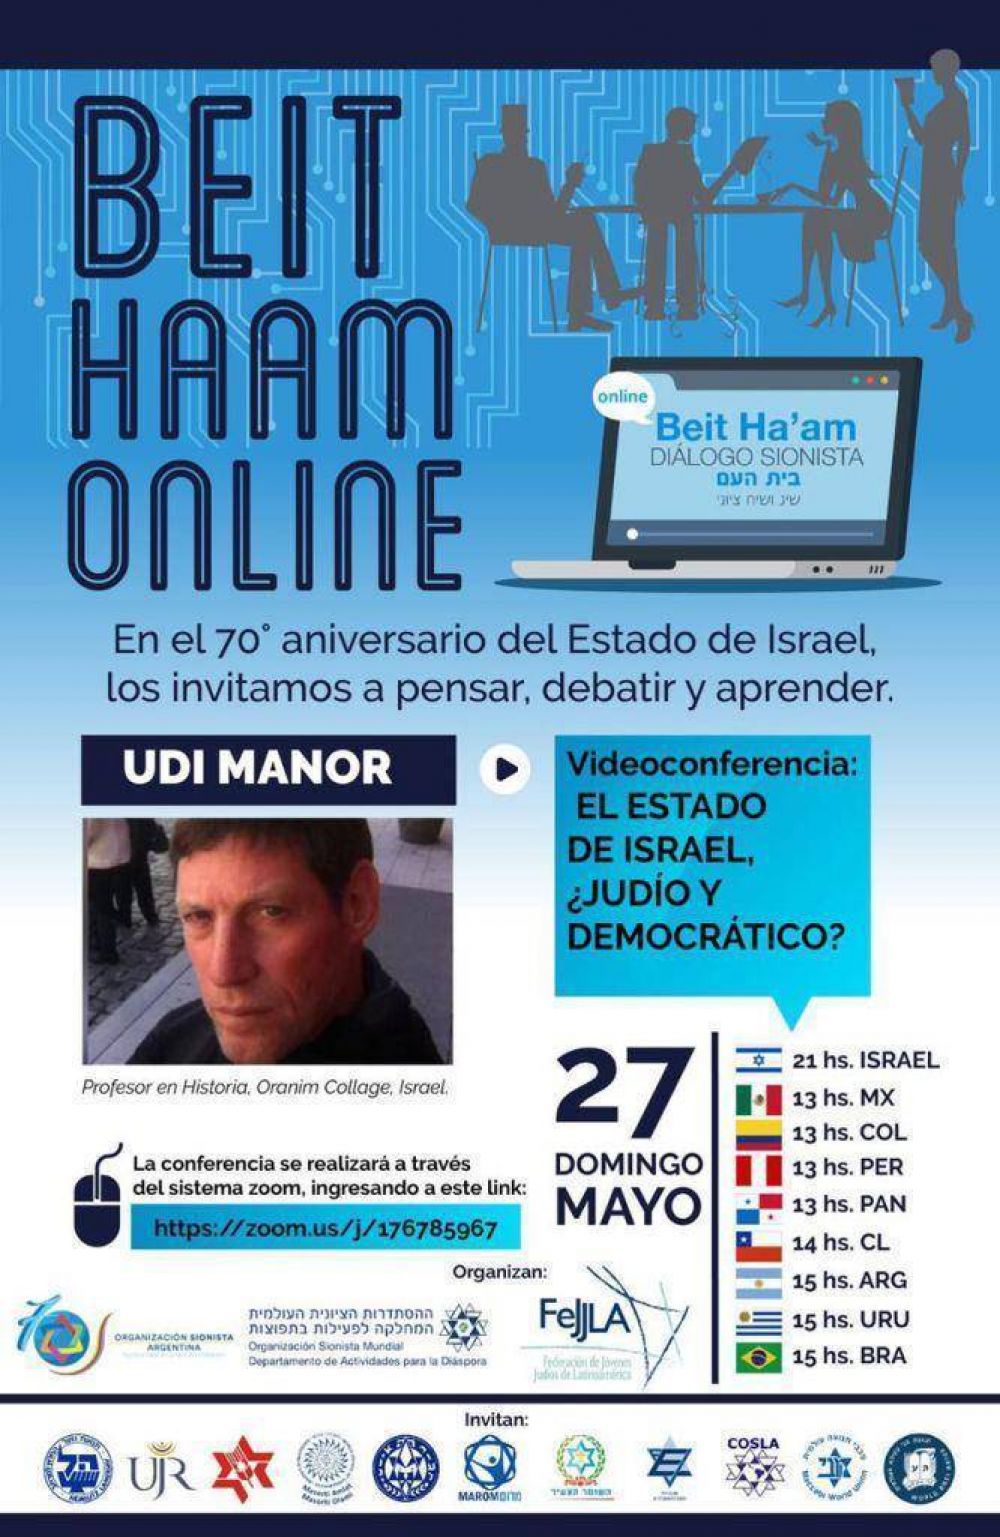 Dialogo sionista con Udi Manor en video conferencia: El Estado de Israel, Judo y democrtico?